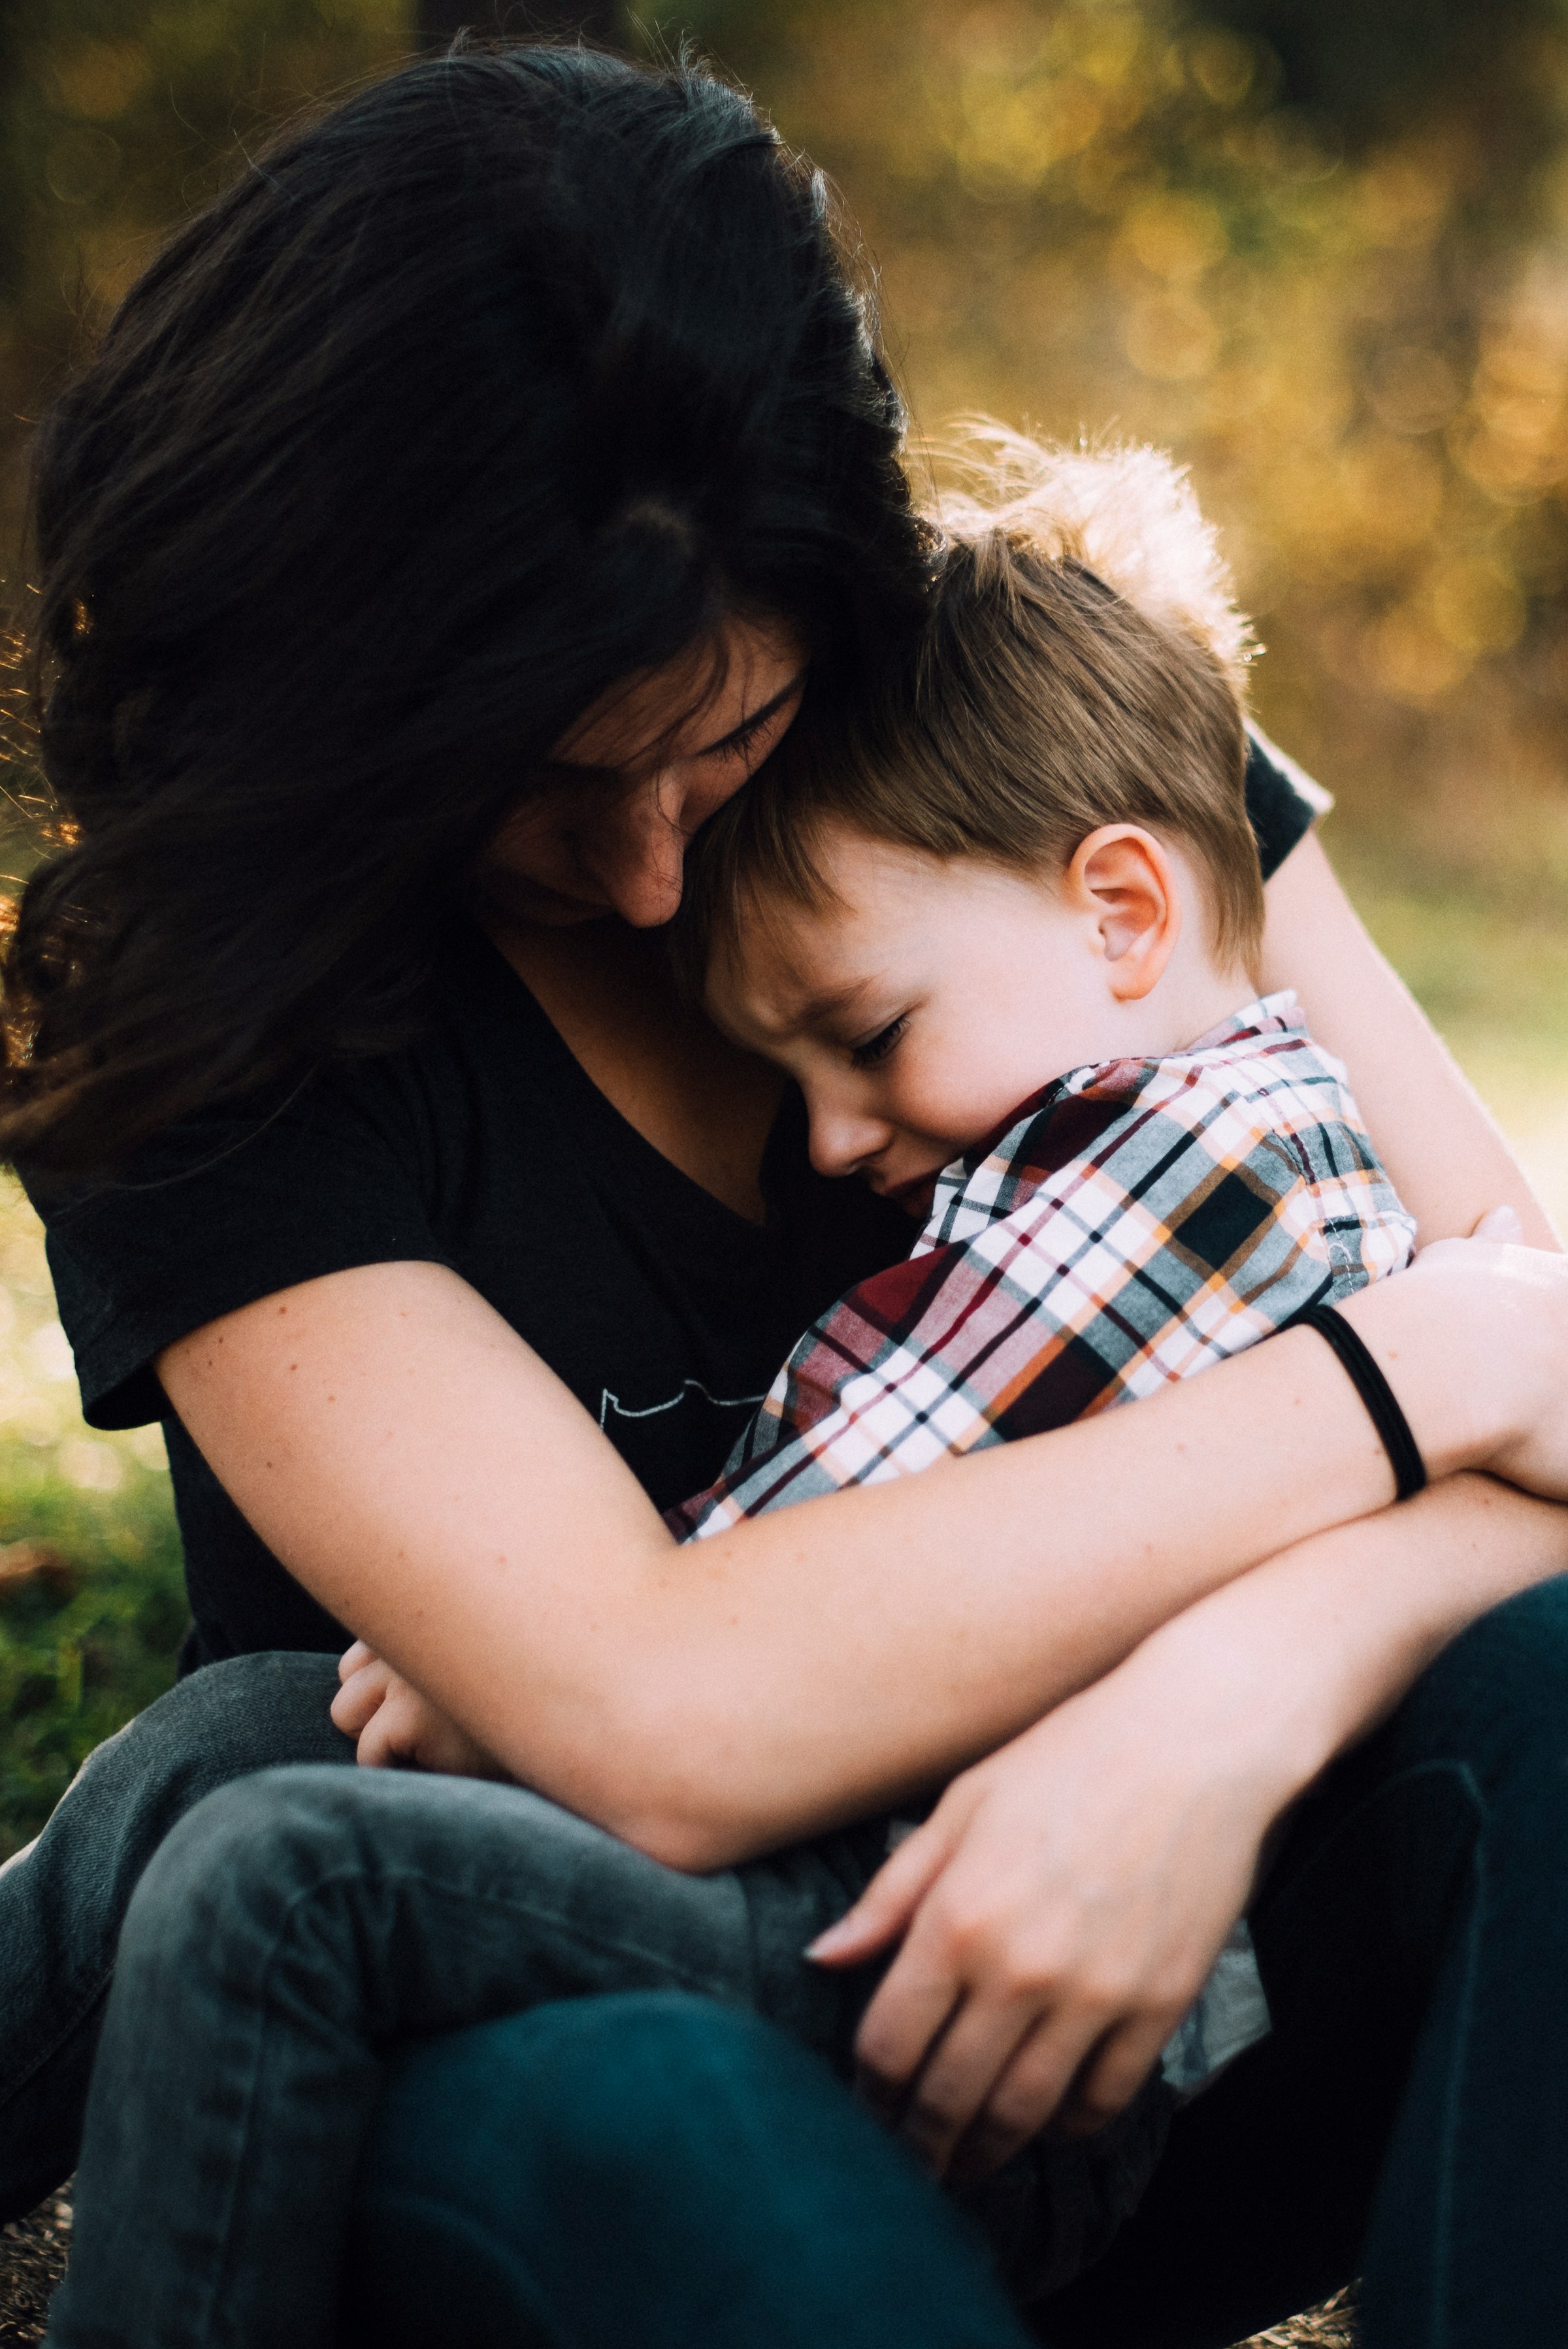 Eine Frau, die einen weinenden kleinen Jungen umarmt | Quelle: Unsplash